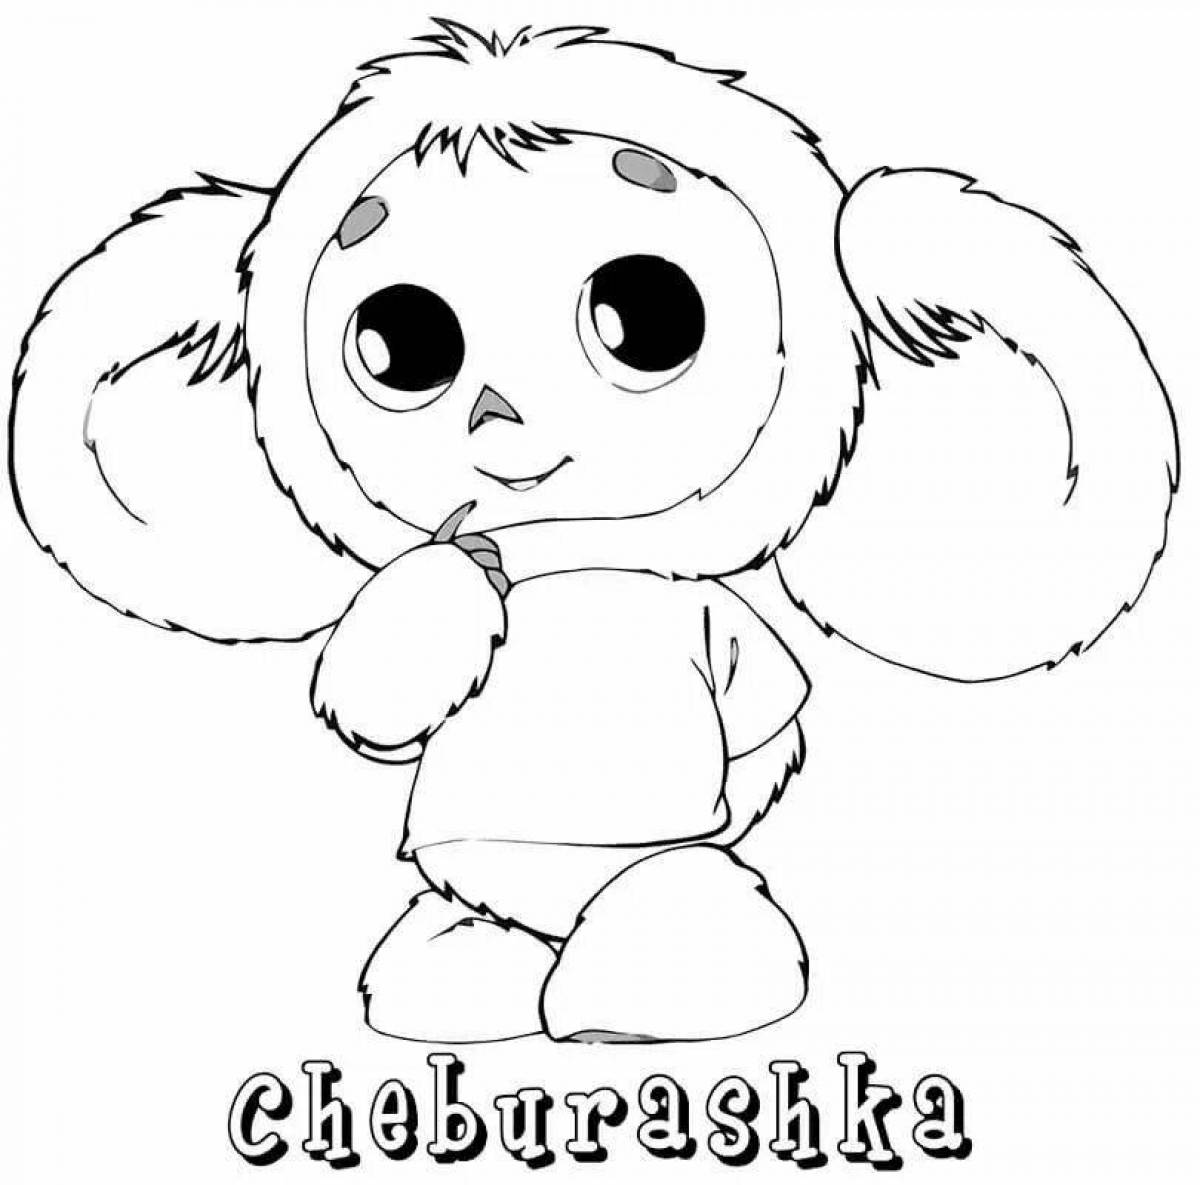 Cheburashka picture #1